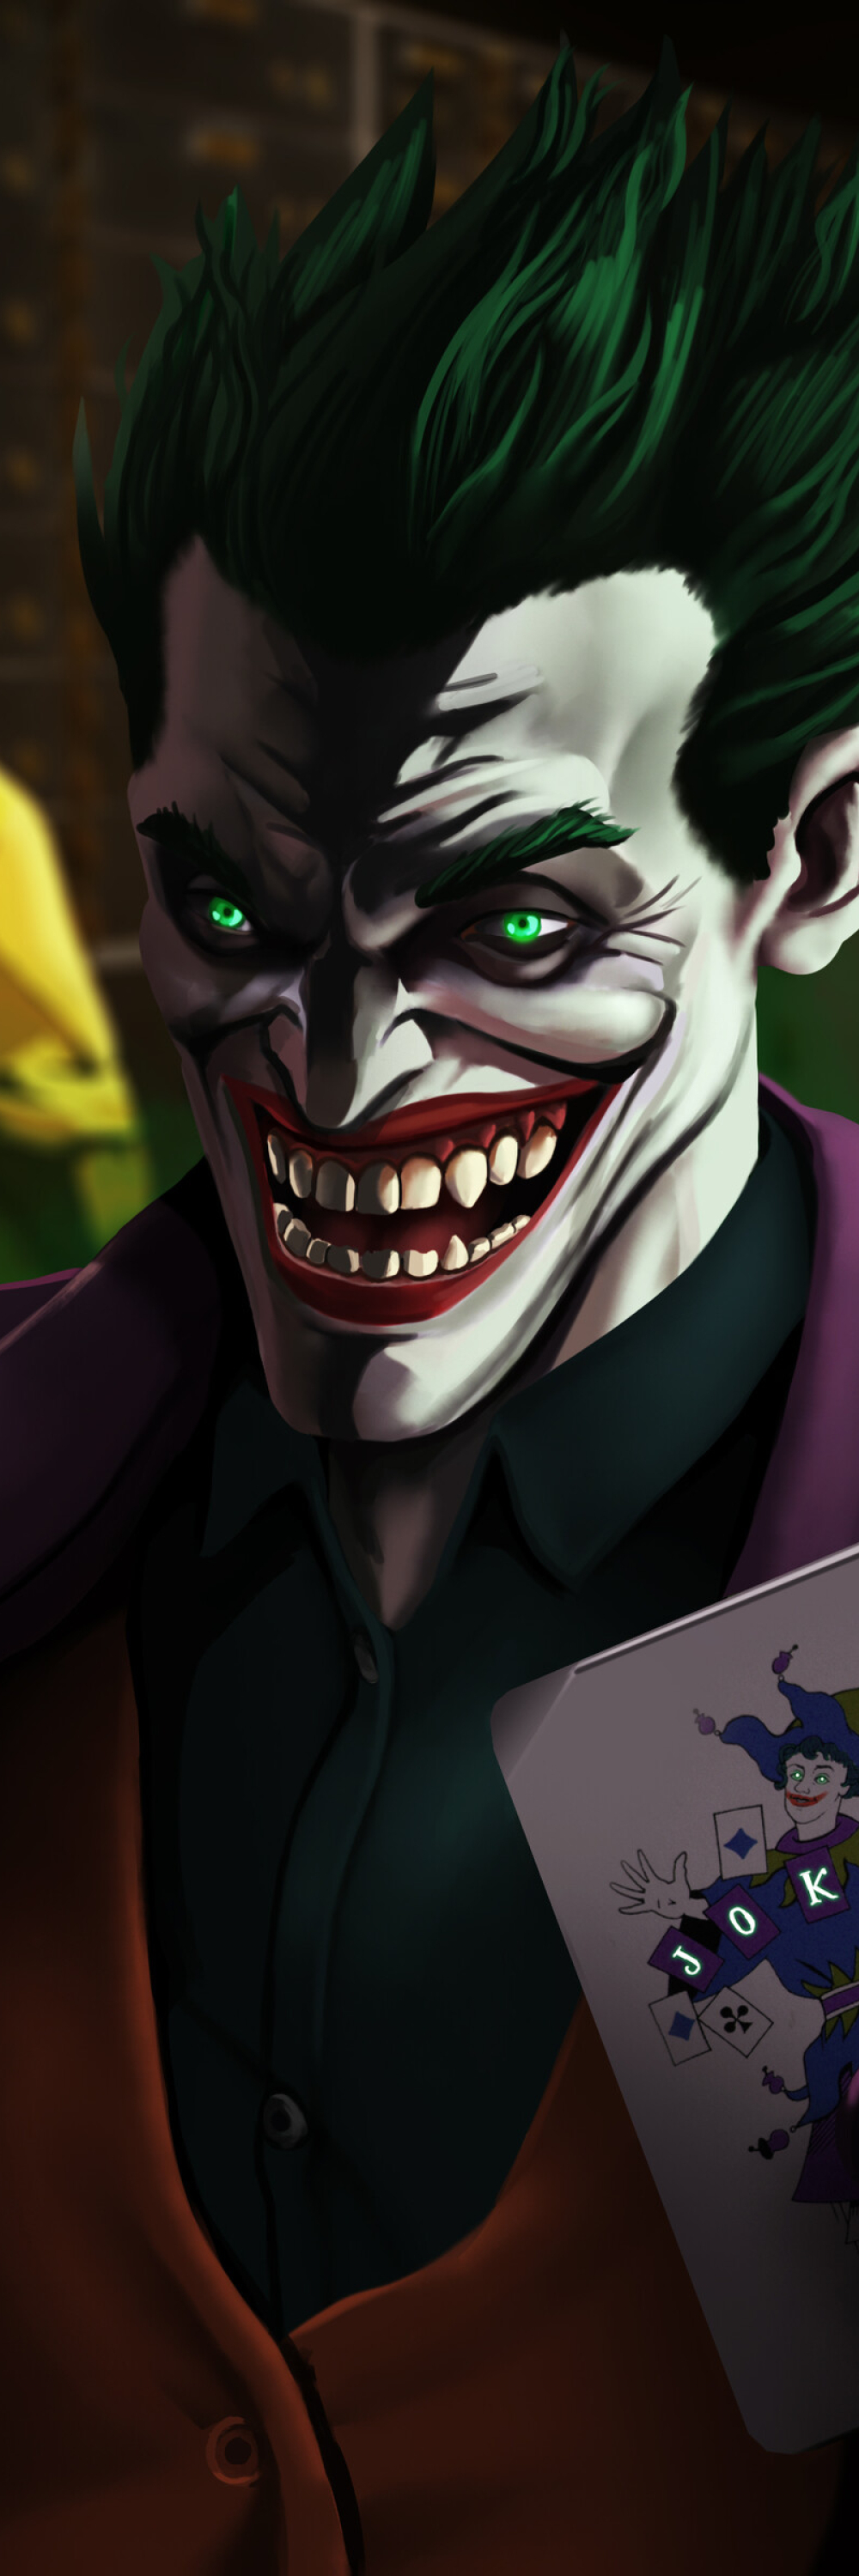 1000x3000 Resolution An Evil Joker Laugh 1000x3000 Resolution Wallpaper ...